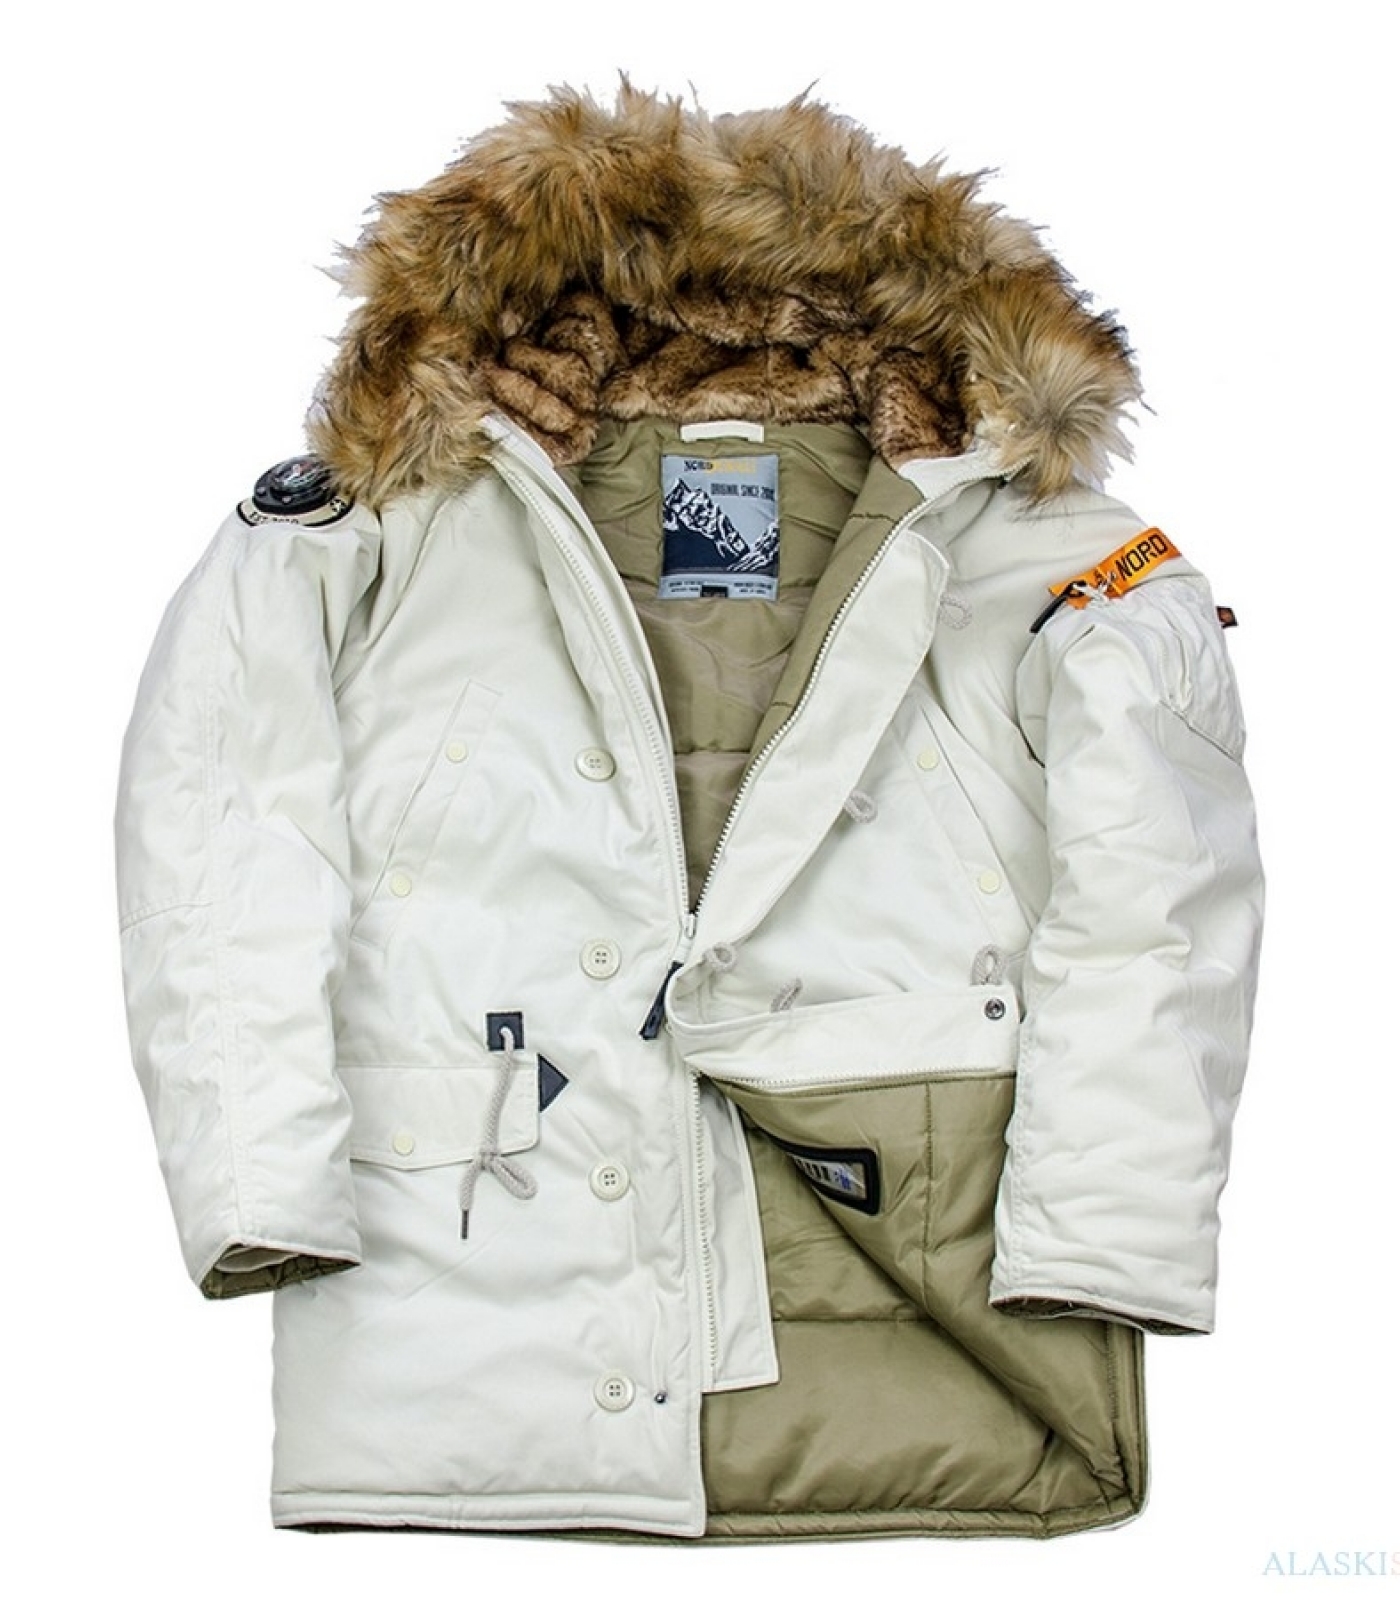 Купить аляску в спб. Куртка Аляска Норд Денали. Куртка Аляска Denali Oxford 2.0. Куртка Аляска зимняя Nord Denali. Nord Denali женская Аляска.